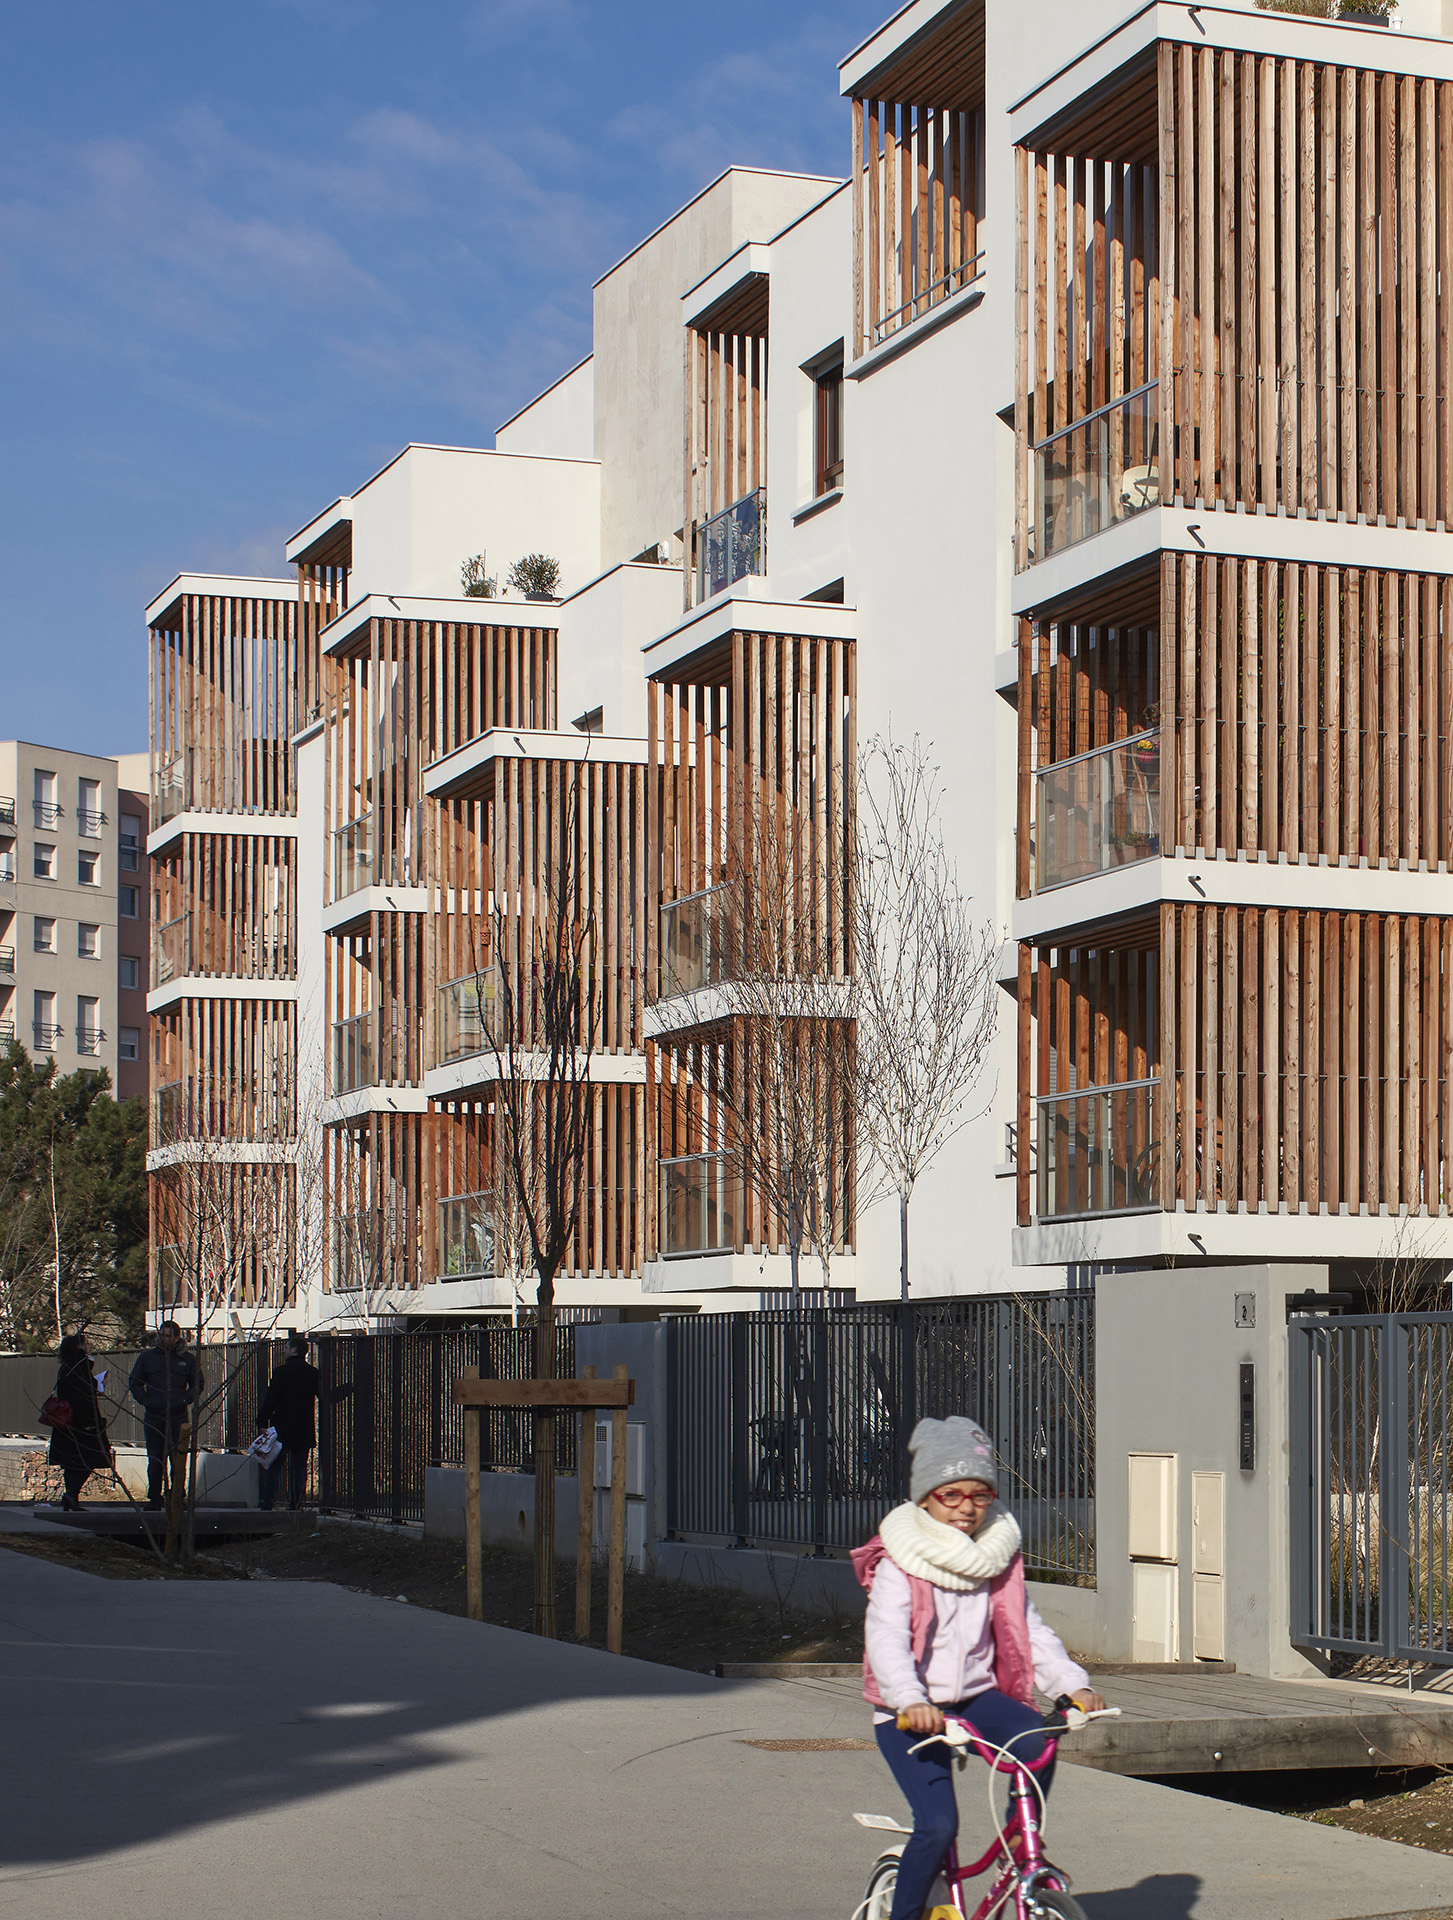 Maisons Neuves - Ilot D1/D2 (Atelier Régis Gachon Architecte)